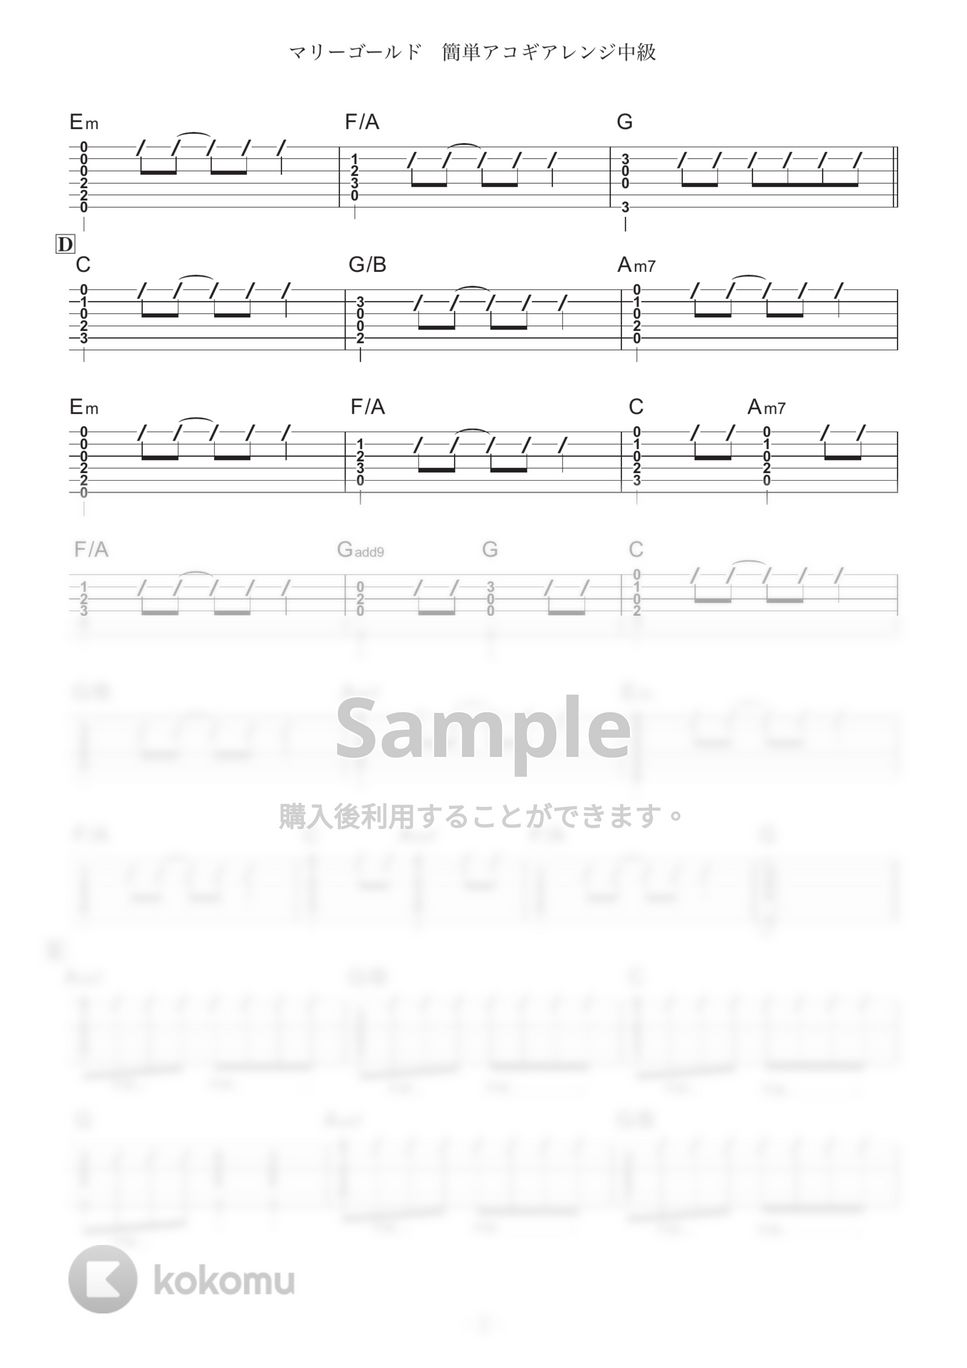 あいみょん - マリーゴールド (簡単アコギアレンジ / コードストローク) by コウダタカシ